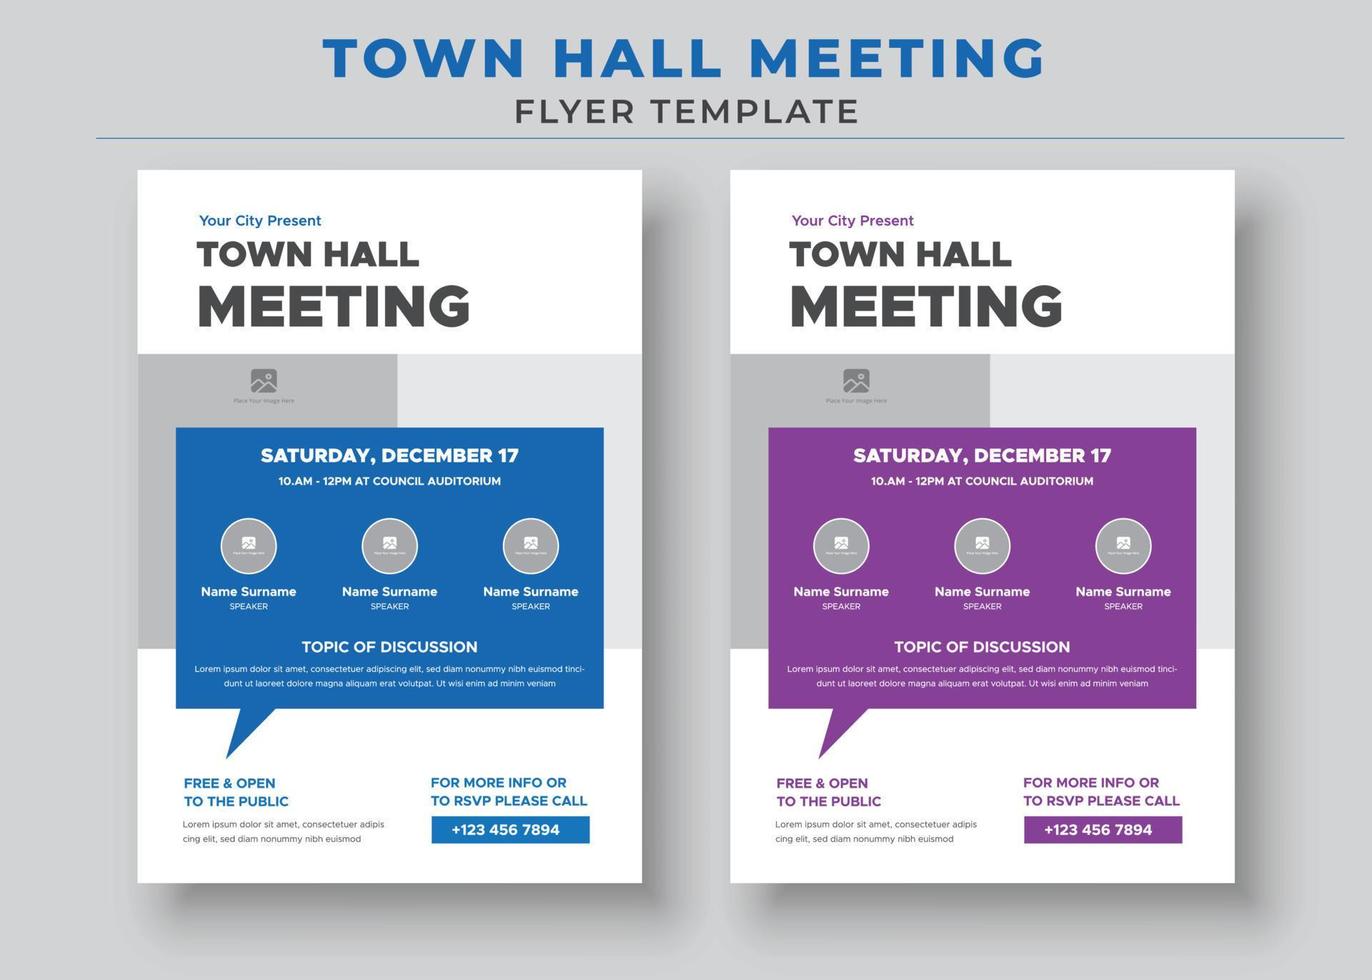 plantillas de folletos de reuniones del ayuntamiento, folletos y carteles del ayuntamiento vector